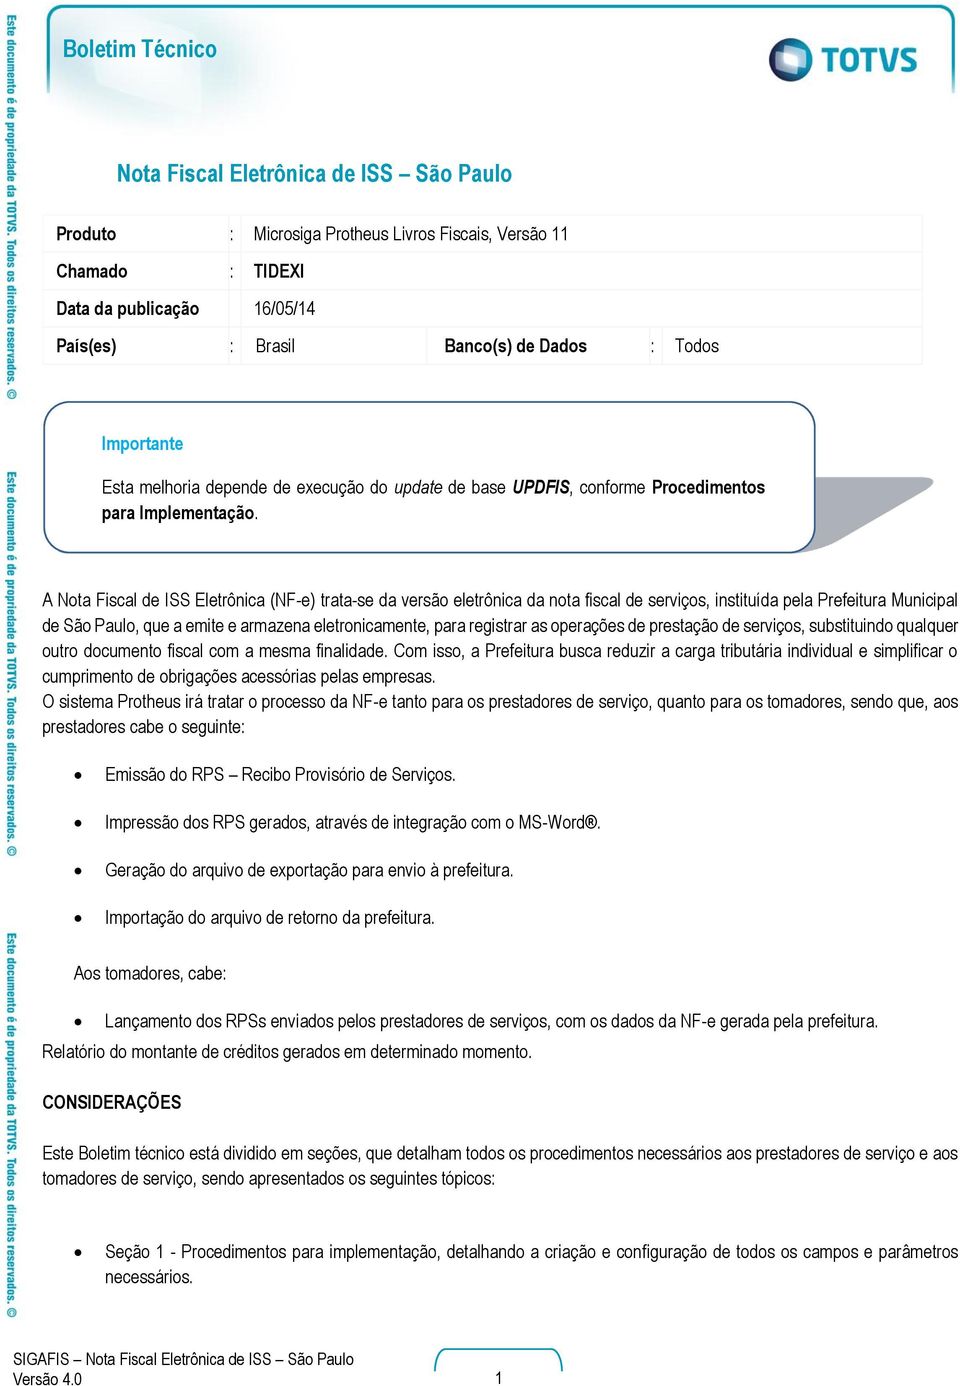 A Nota Fiscal de ISS Eletrônica (NF-e) trata-se da versão eletrônica da nota fiscal de serviços, instituída pela Prefeitura Municipal de São Paulo, que a emite e armazena eletronicamente, para